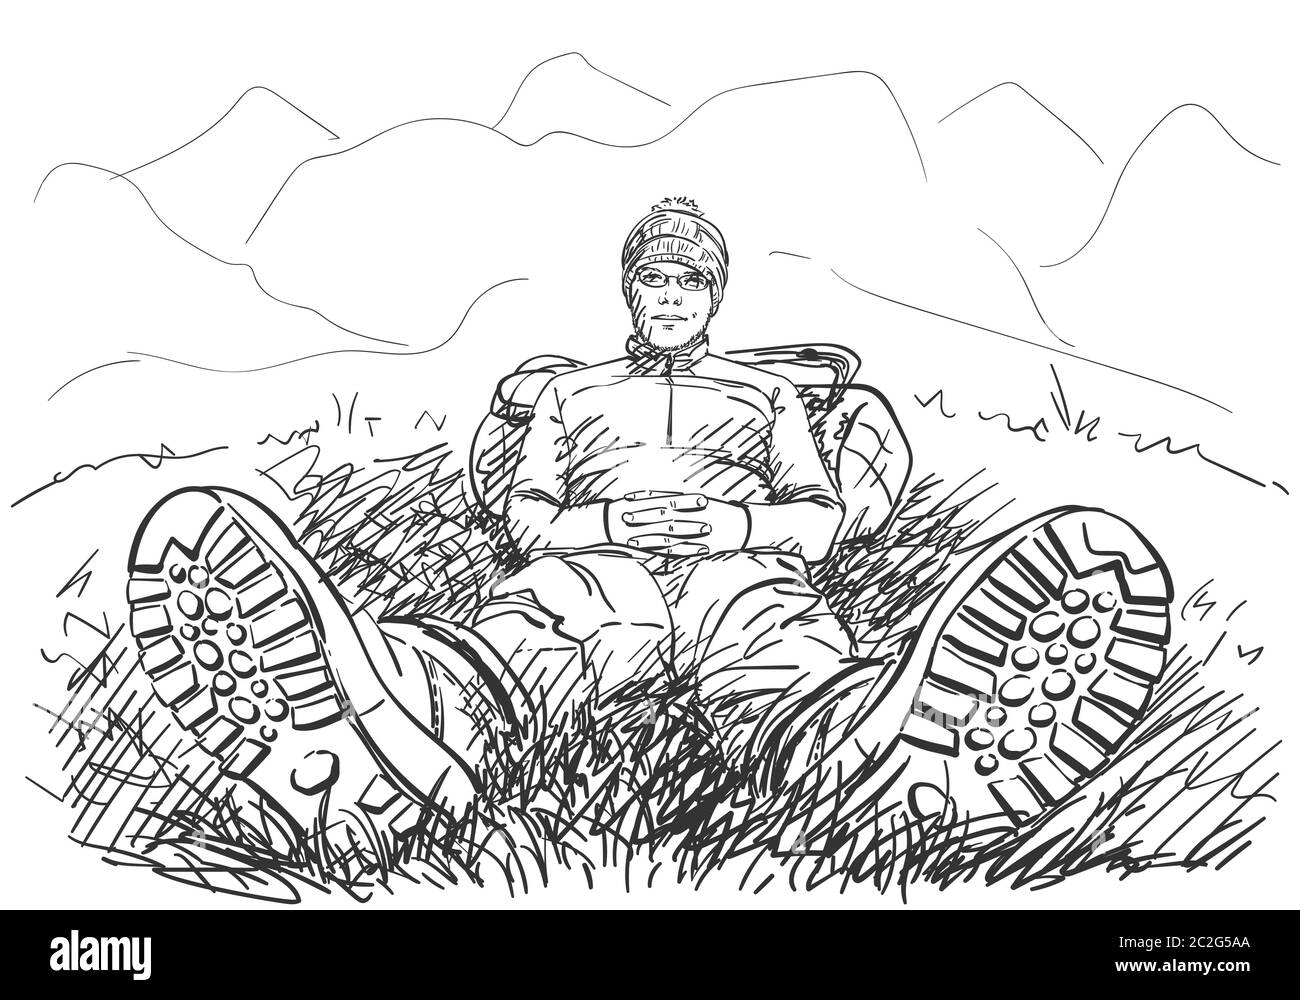 Perspektivische Zeichnung des Wanderers, der auf dem Boden sitzt, mit den Beinen in den Wanderschuhen, nach vorne gestreckt, und mit dem Rücken, der auf dem Rucksack ausgeruht ist, in den Bergen env Stock Vektor